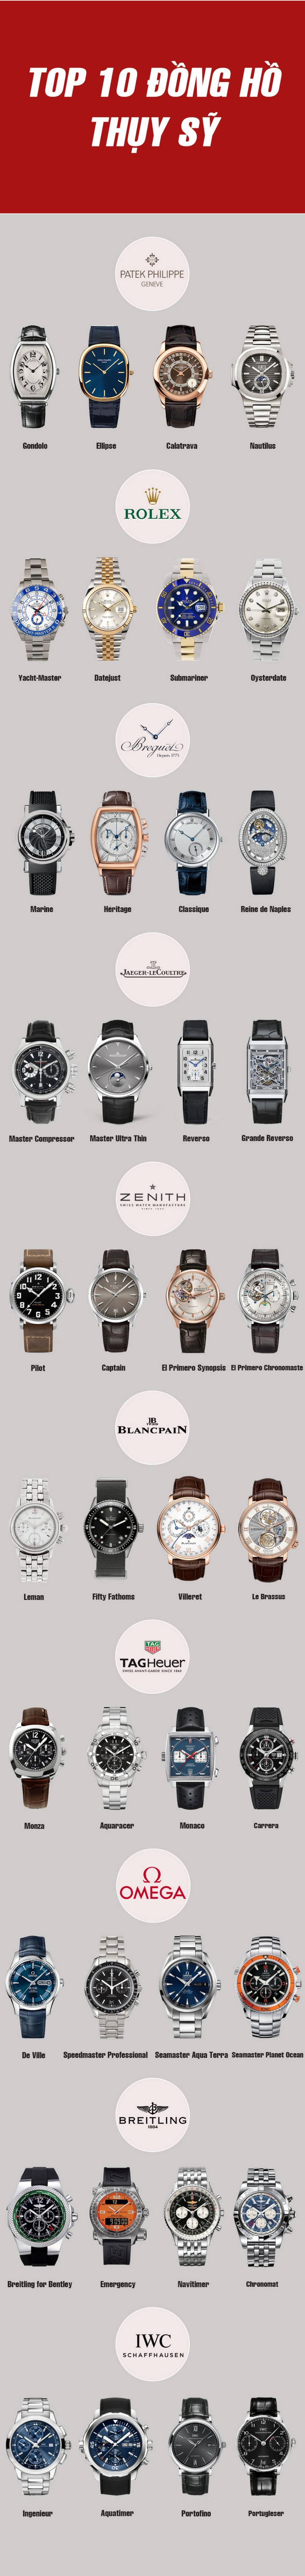 Top 10 thương hiệu đồng hồ Thụy Sỹ hàng đầu